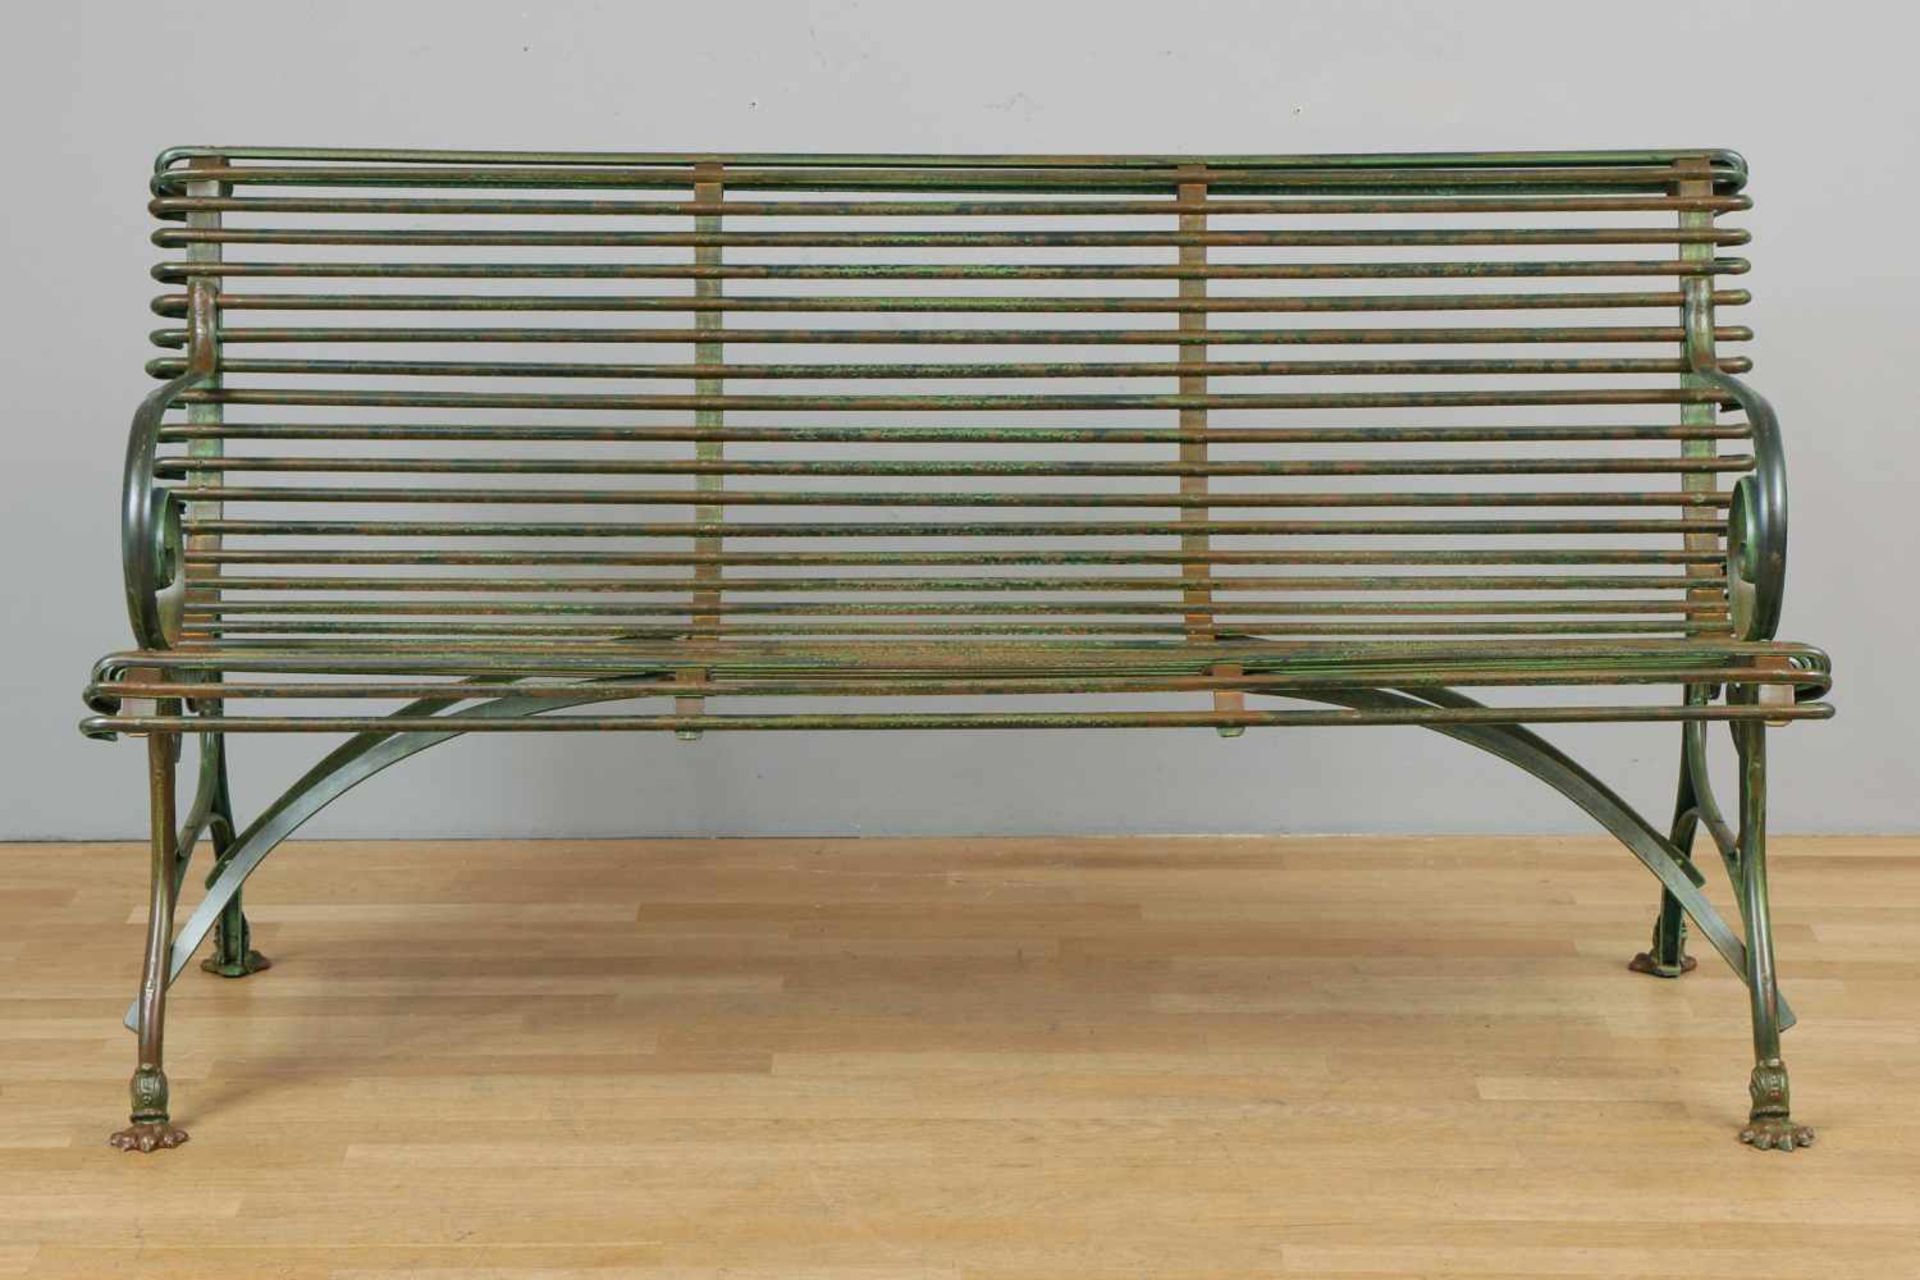 Französische Park-/Gartenbank Eisen, grün patiniert, verstrebte Sitzfläche, 2 seitliche Armlehnen in - Bild 2 aus 2